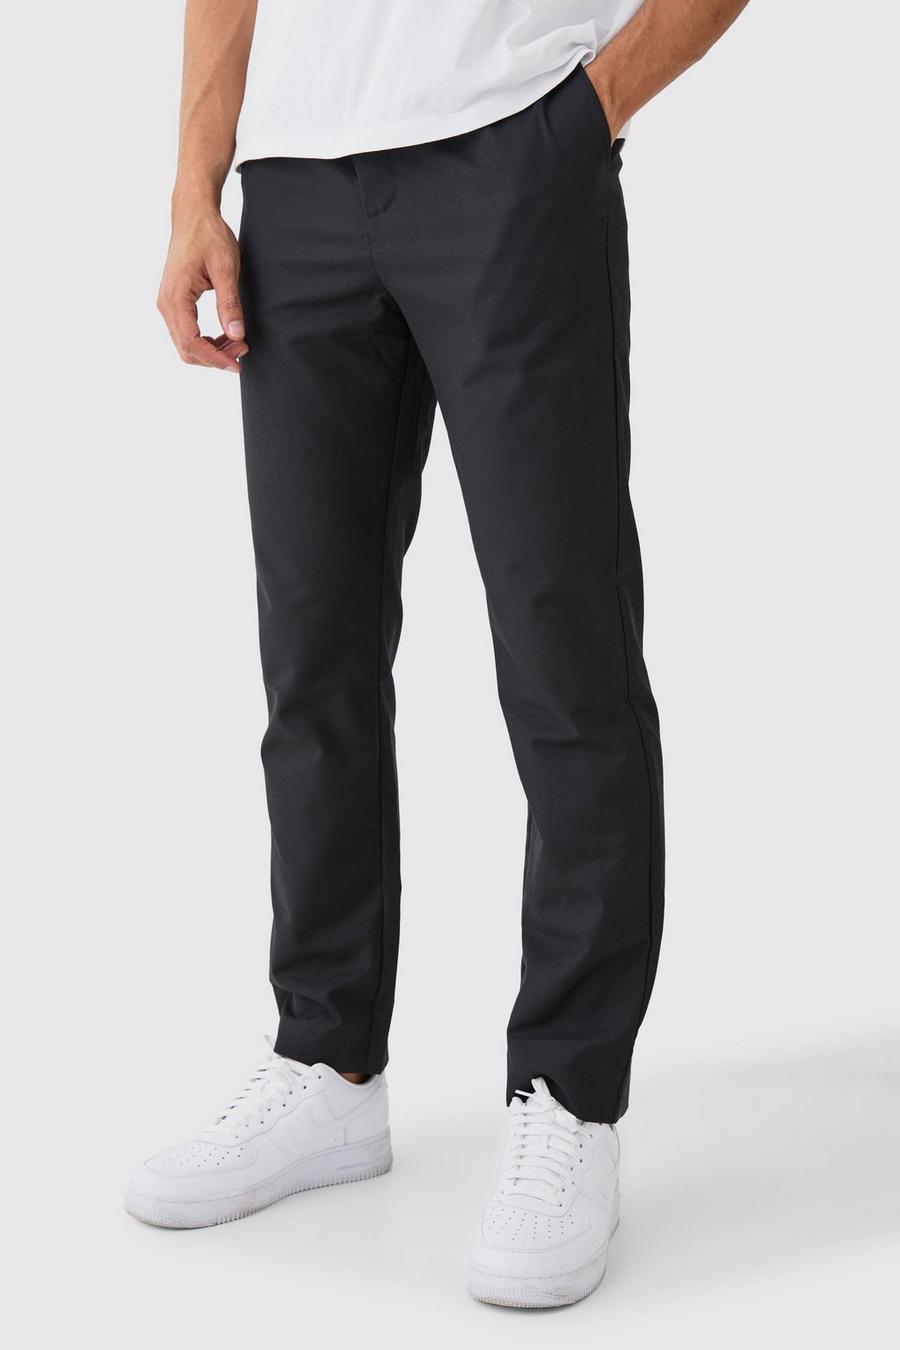 Men's Suit Trousers, Men's Black Suit Trousers